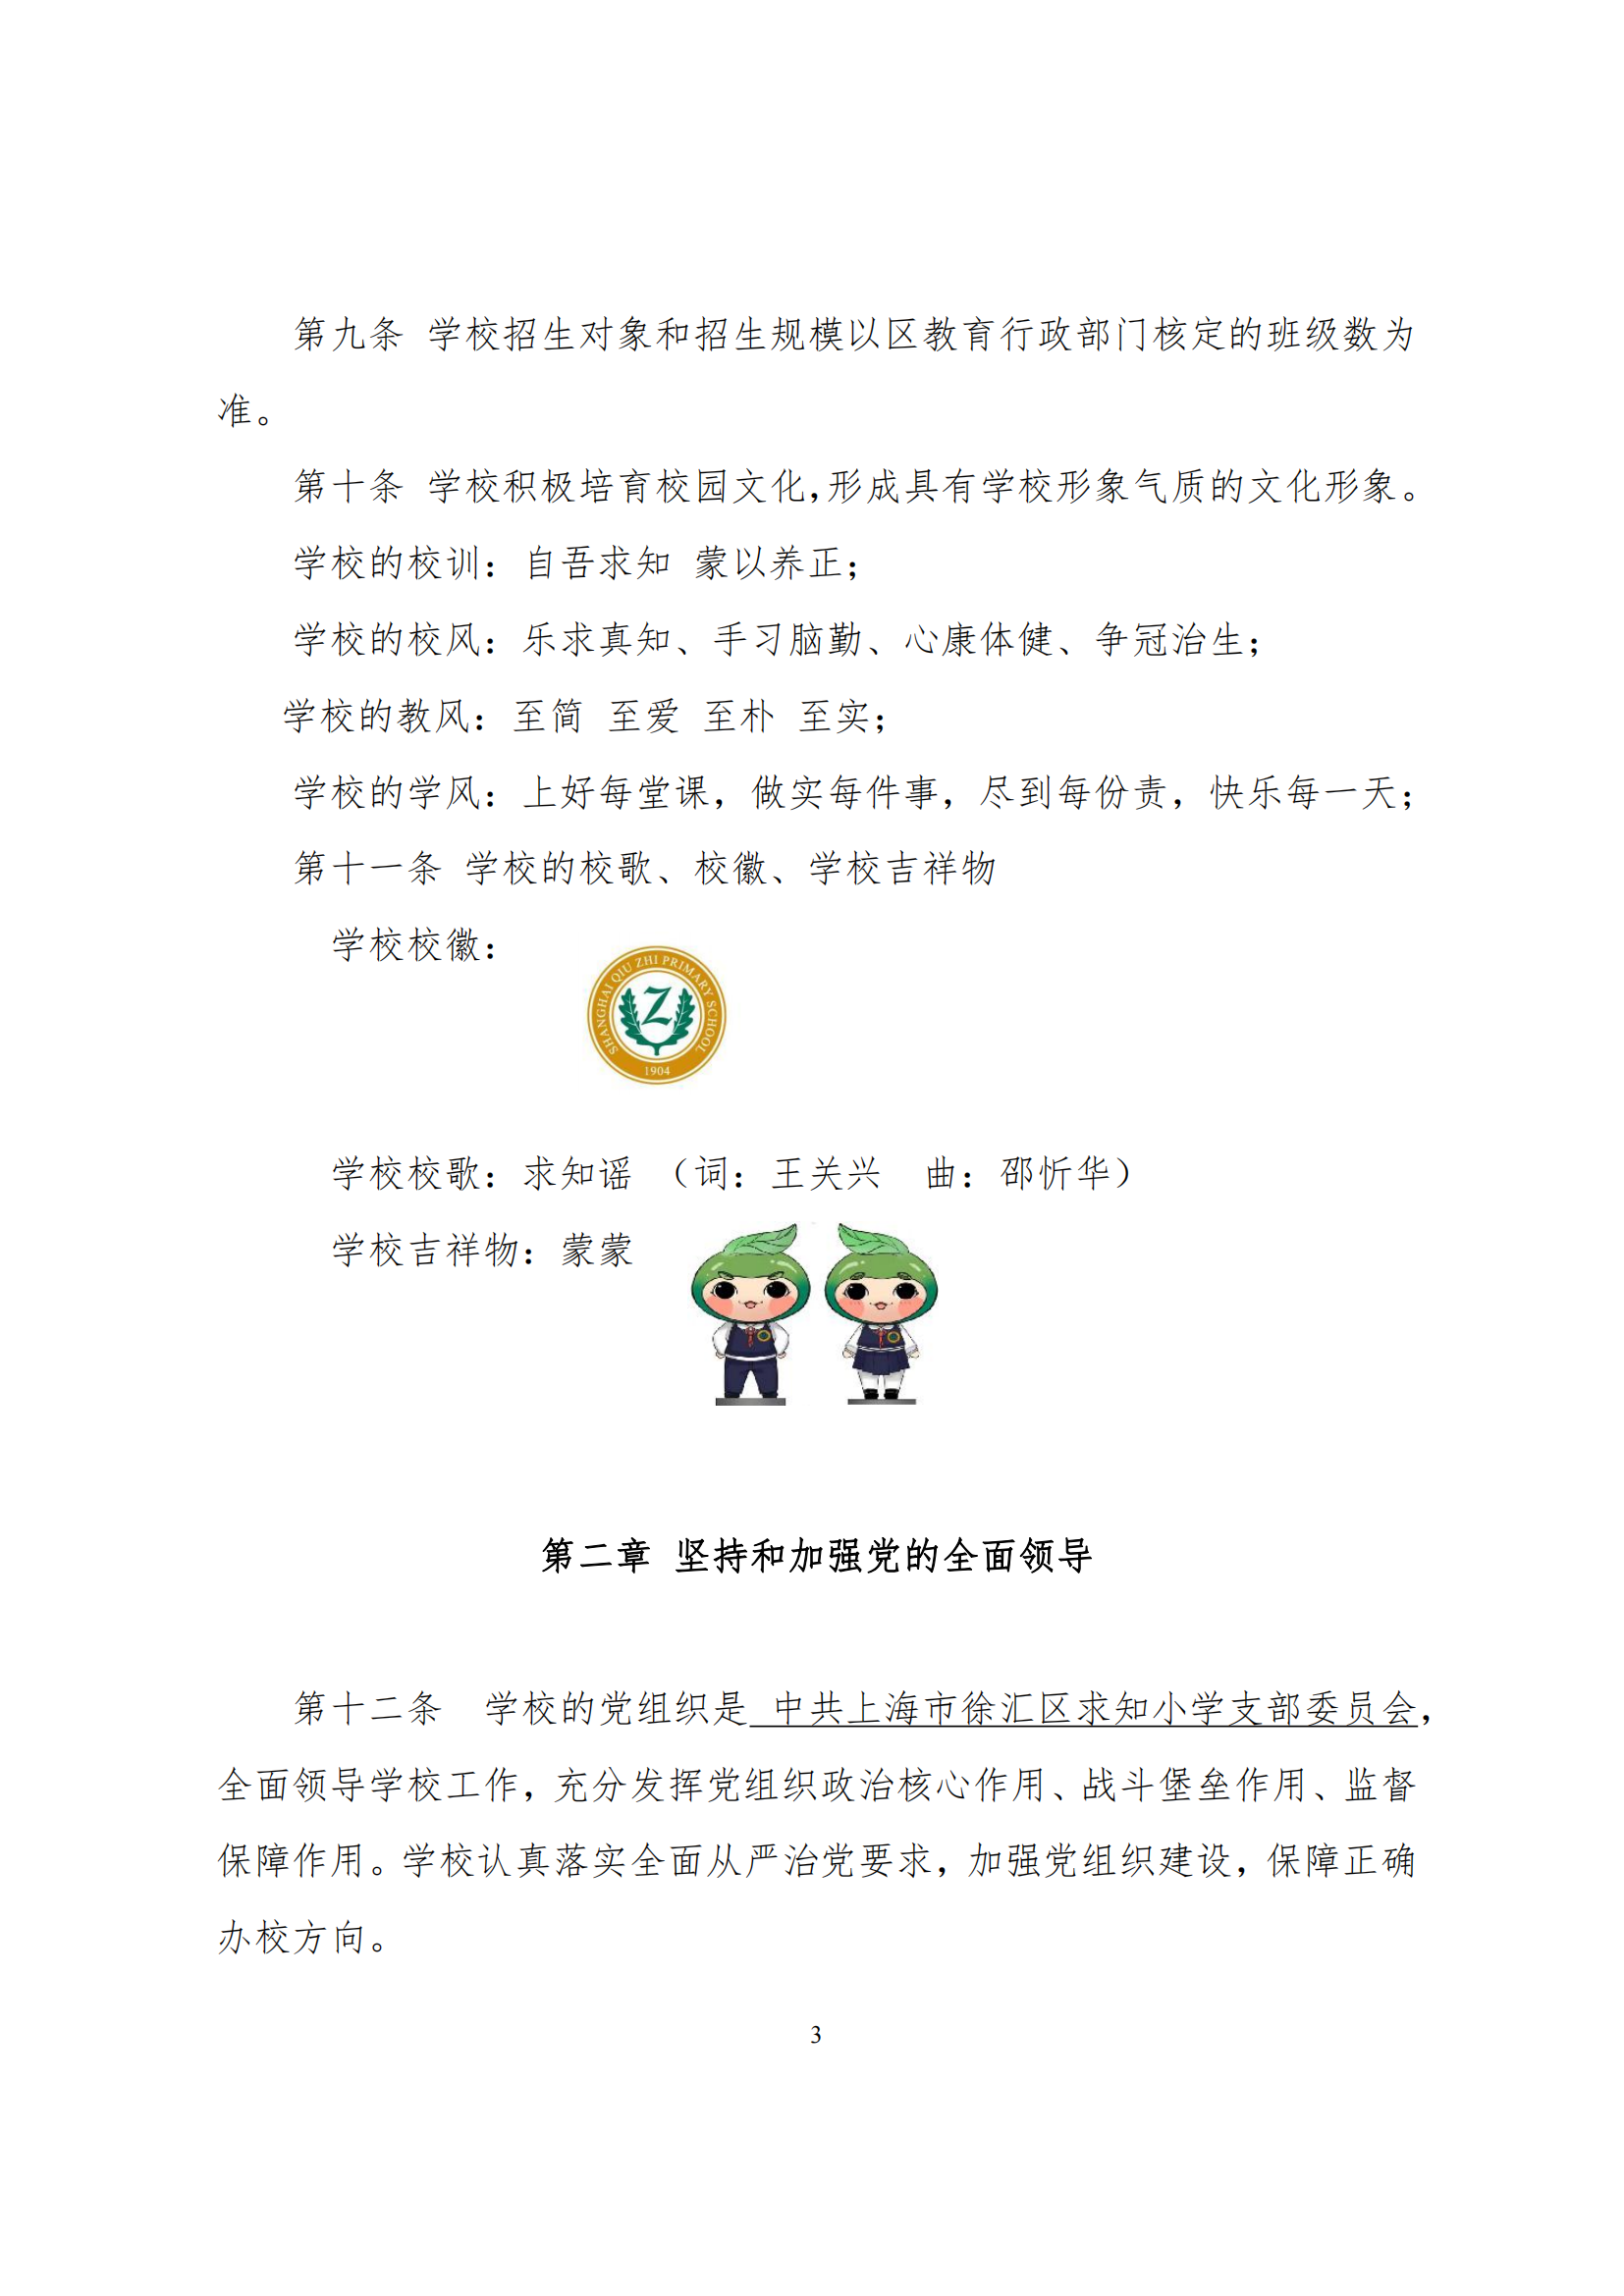 上海市徐汇区求知小学学校章程（提交稿）_02.png